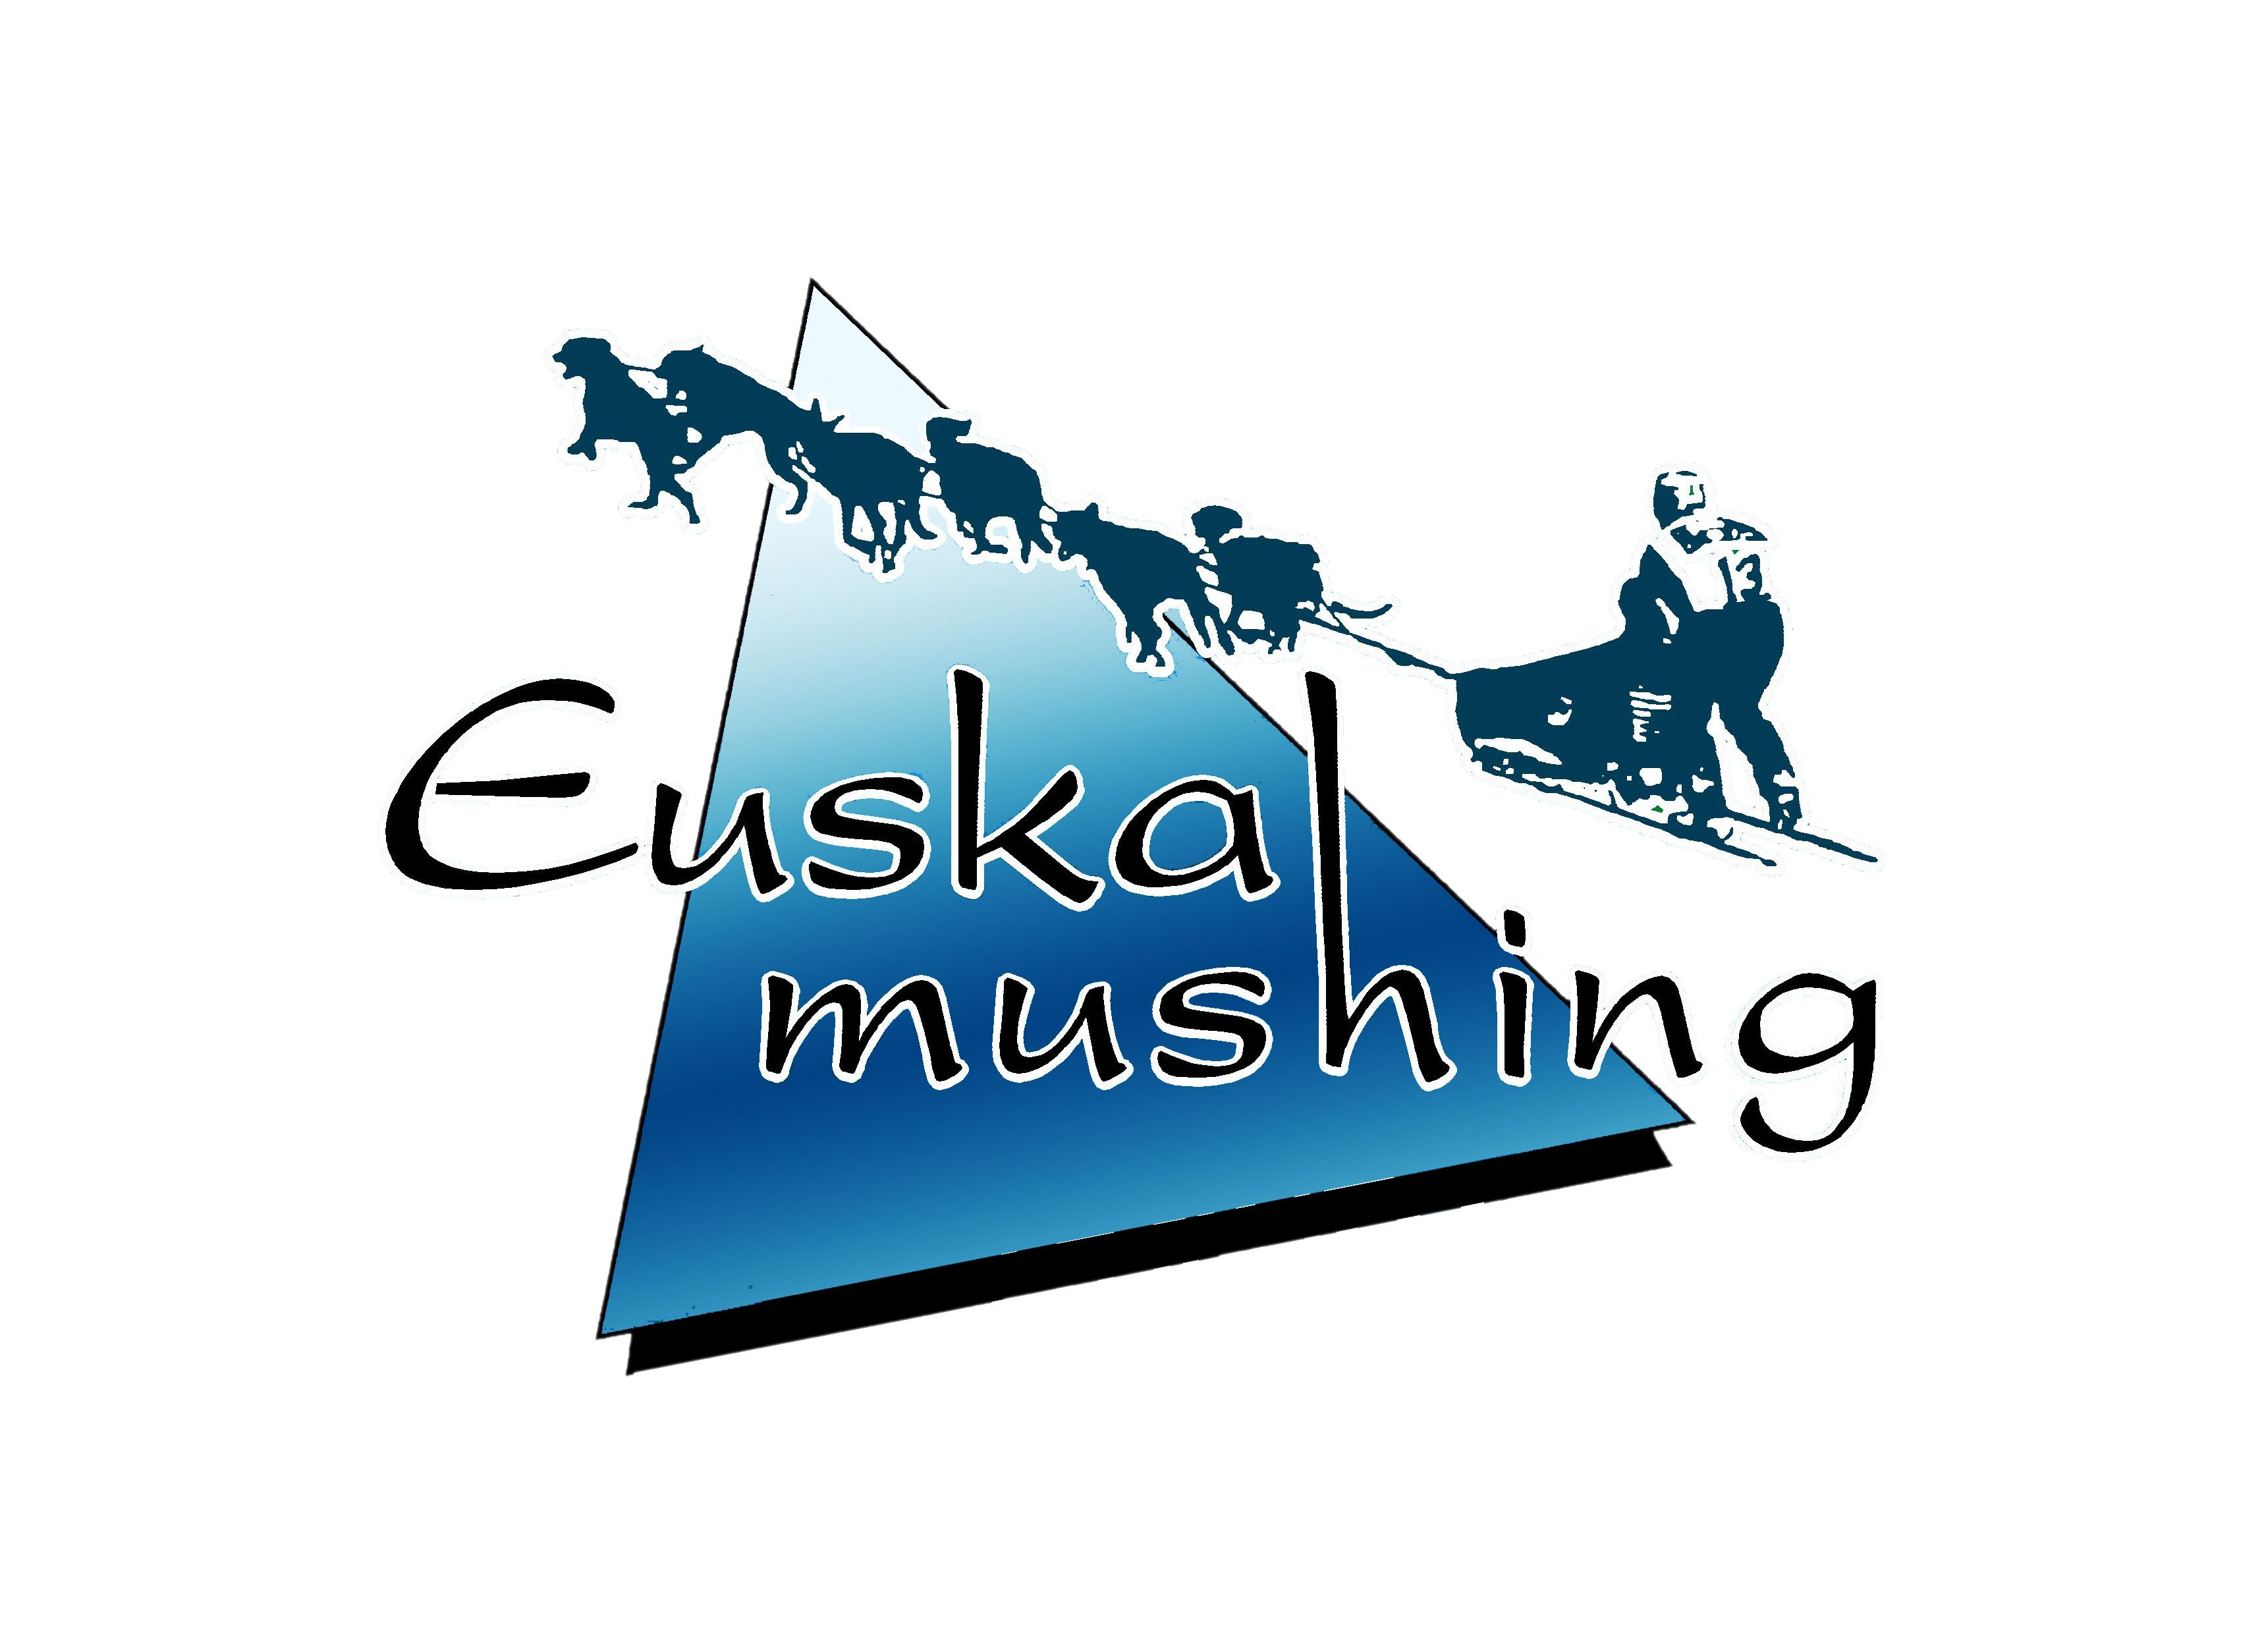 (c) Euskalmushing.com